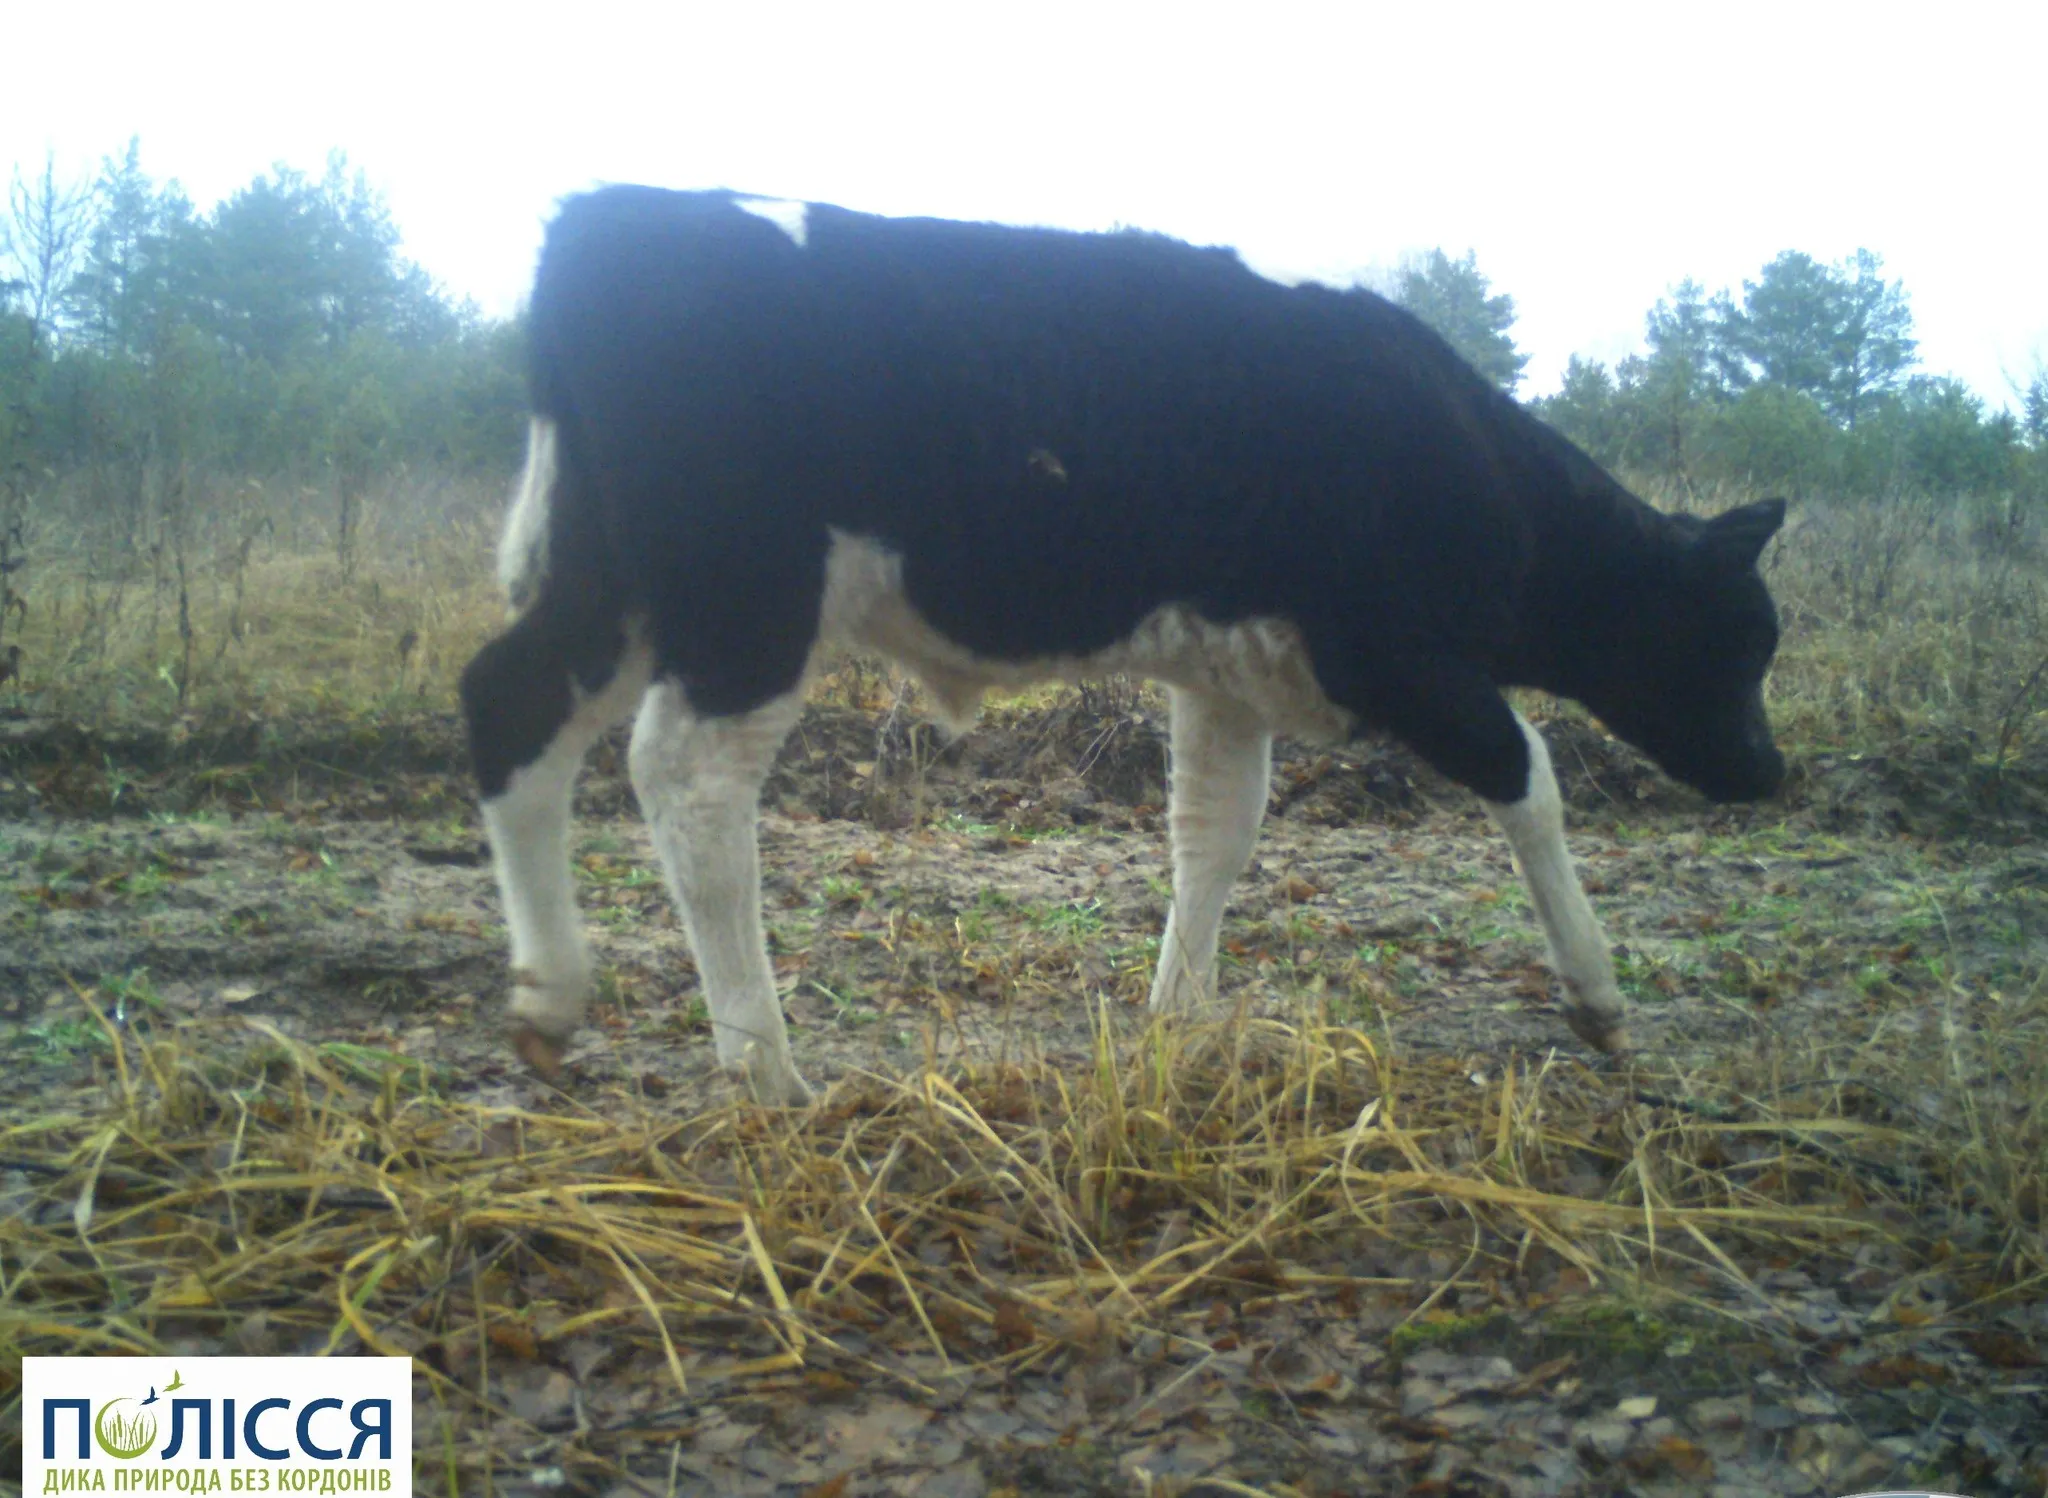 Природоохранники показали стадо диких коров, обитающих в Чернобыле